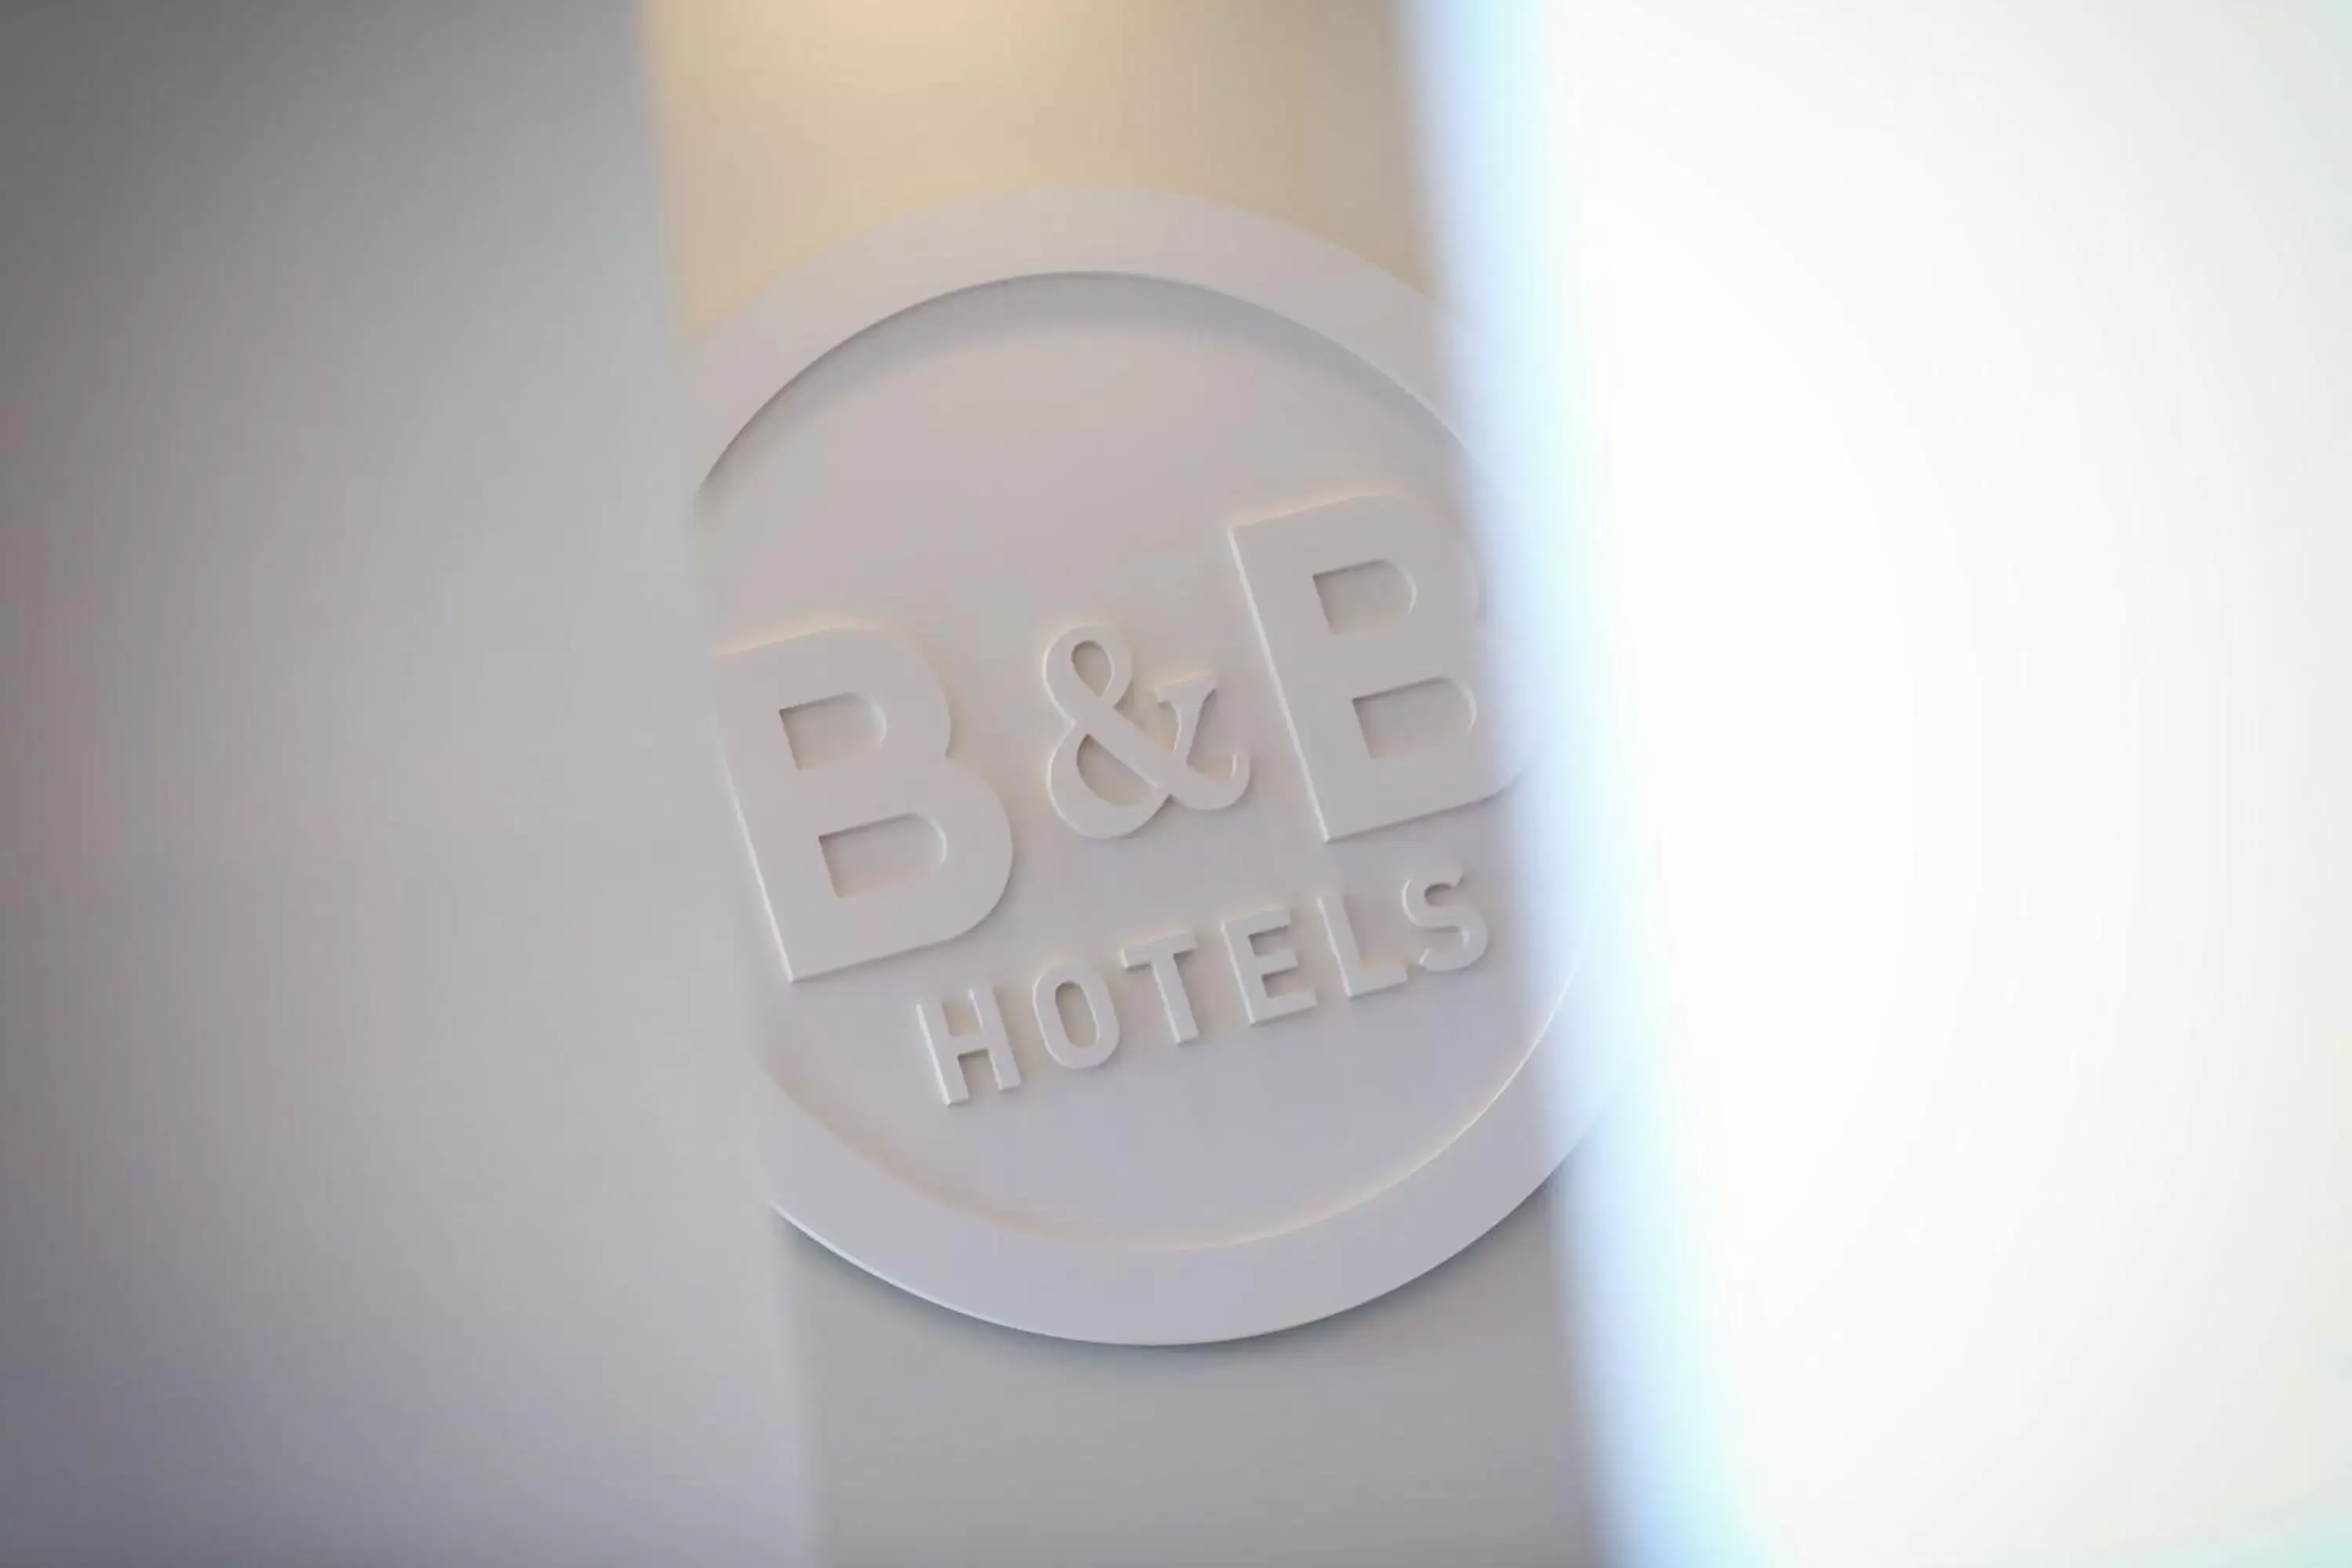 Property logo or sign, Logo/Certificate/Sign/Award in B&B HOTEL Brest Port du Moulin Blanc